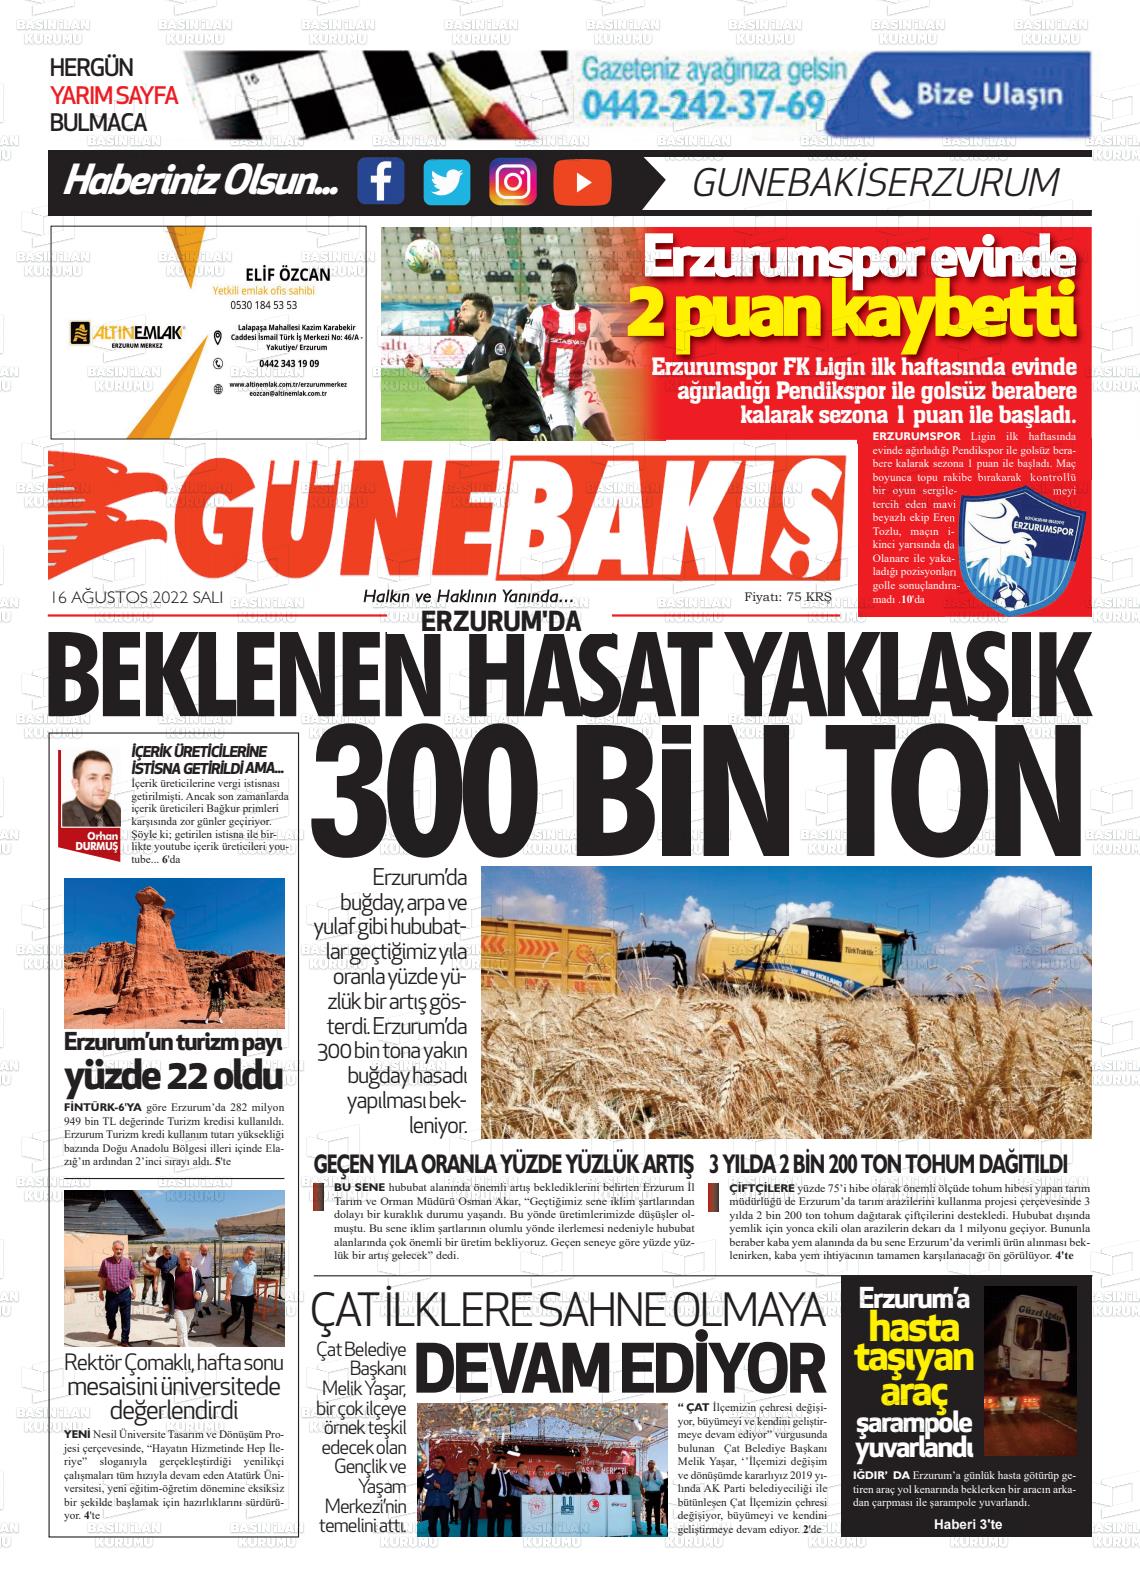 16 Ağustos 2022 Erzurum Günebakış Gazete Manşeti